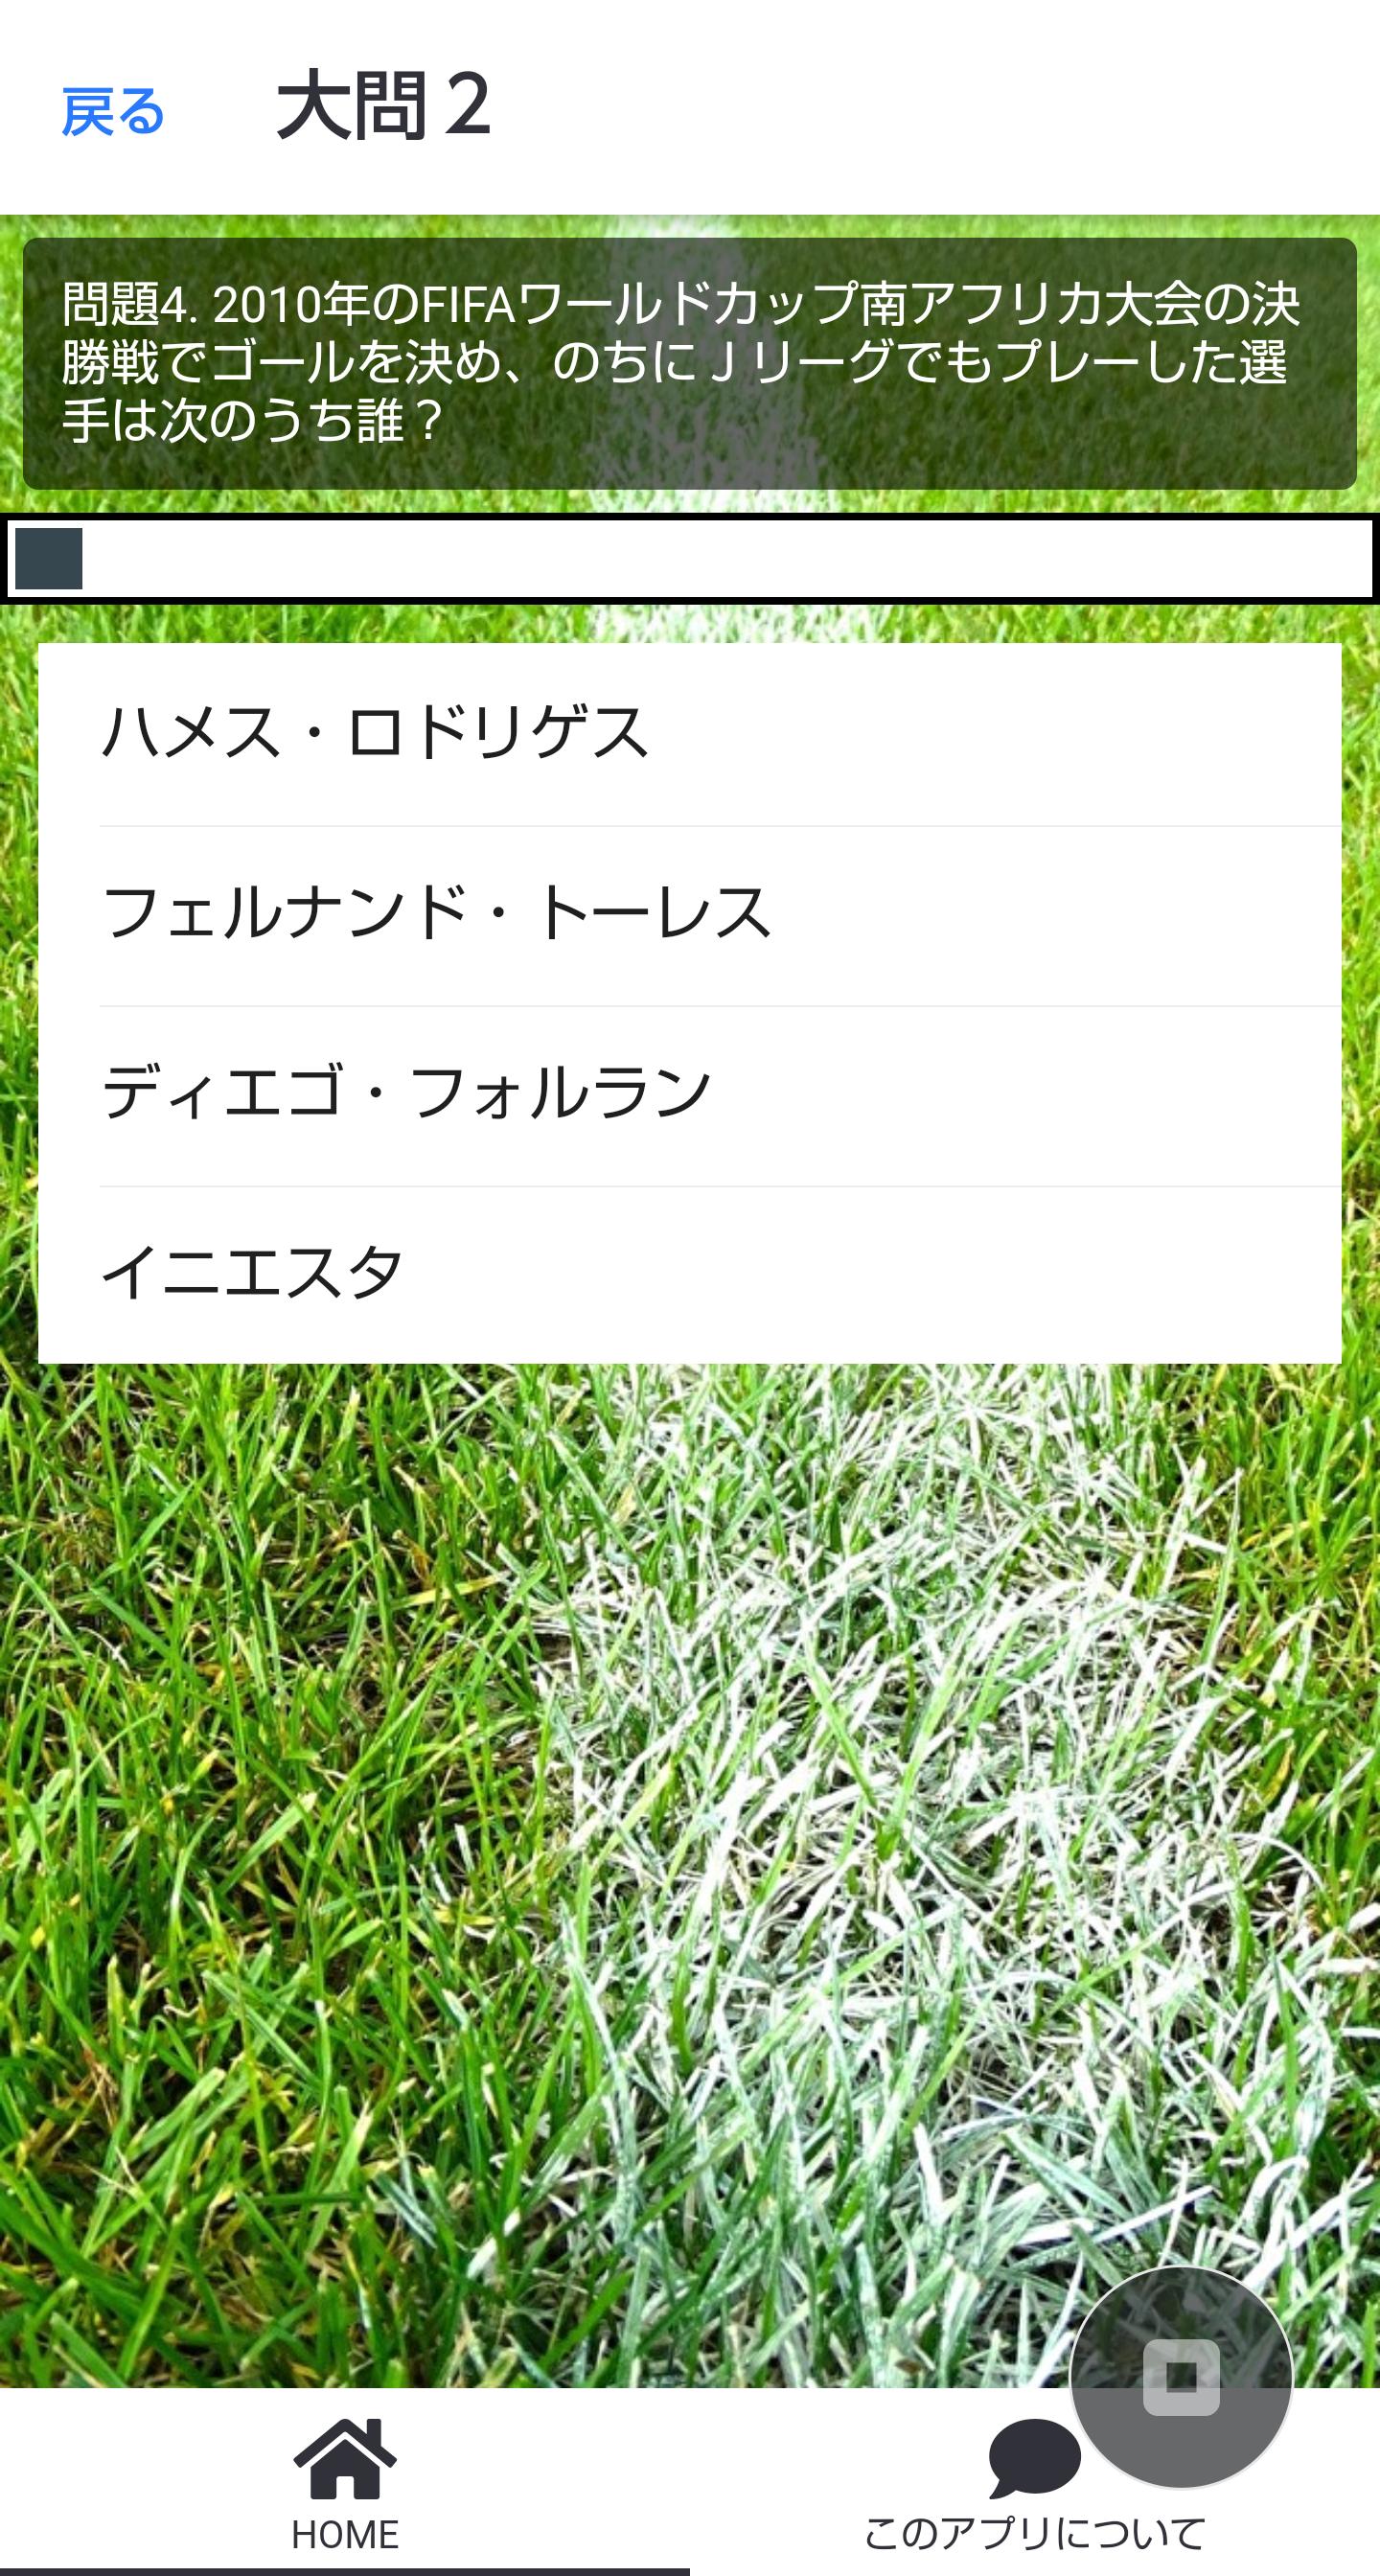 雑学クイズ サッカー検定 ワールドカップからｊリーグまで幅広い知識を問う問題です Cho Android Tải Về Apk